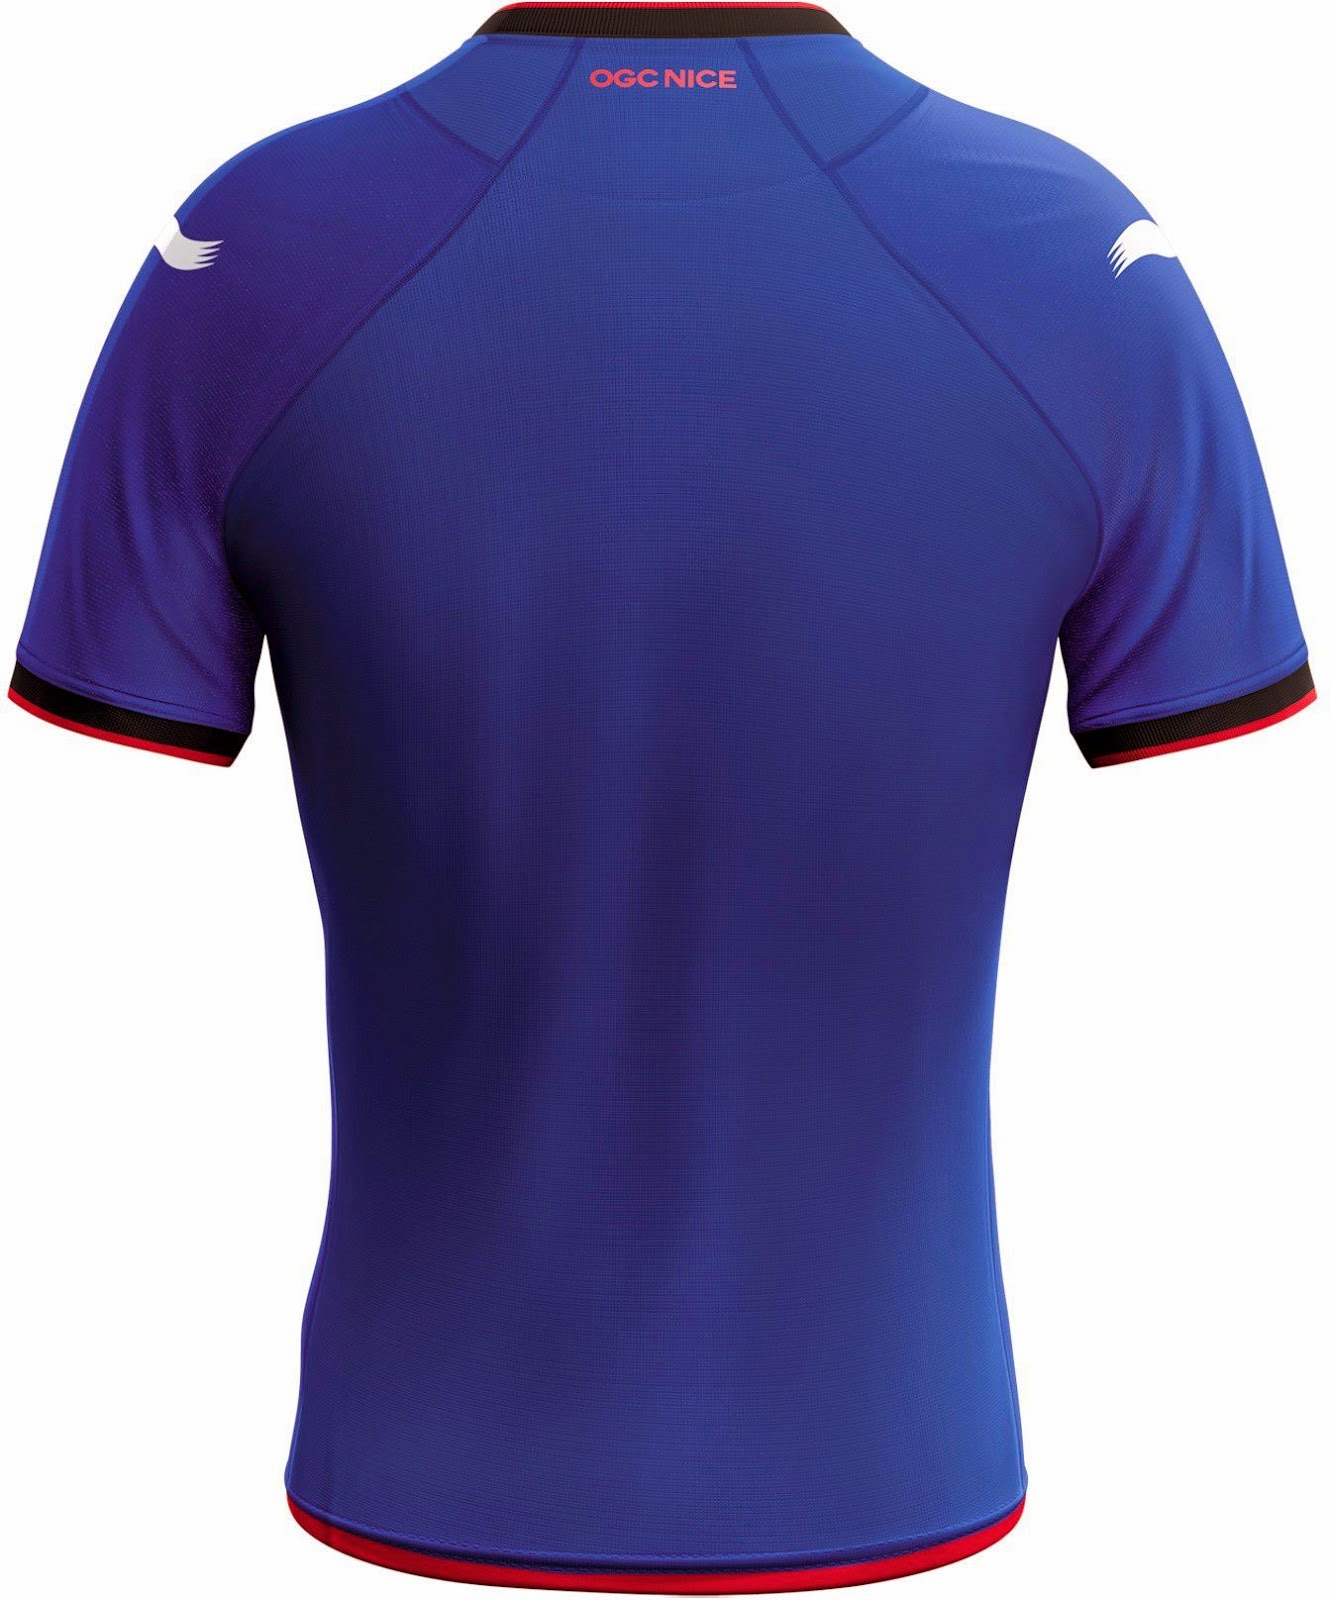 Football Kits FC: OGC Nice 2014/15 Centenary Burrda Kits